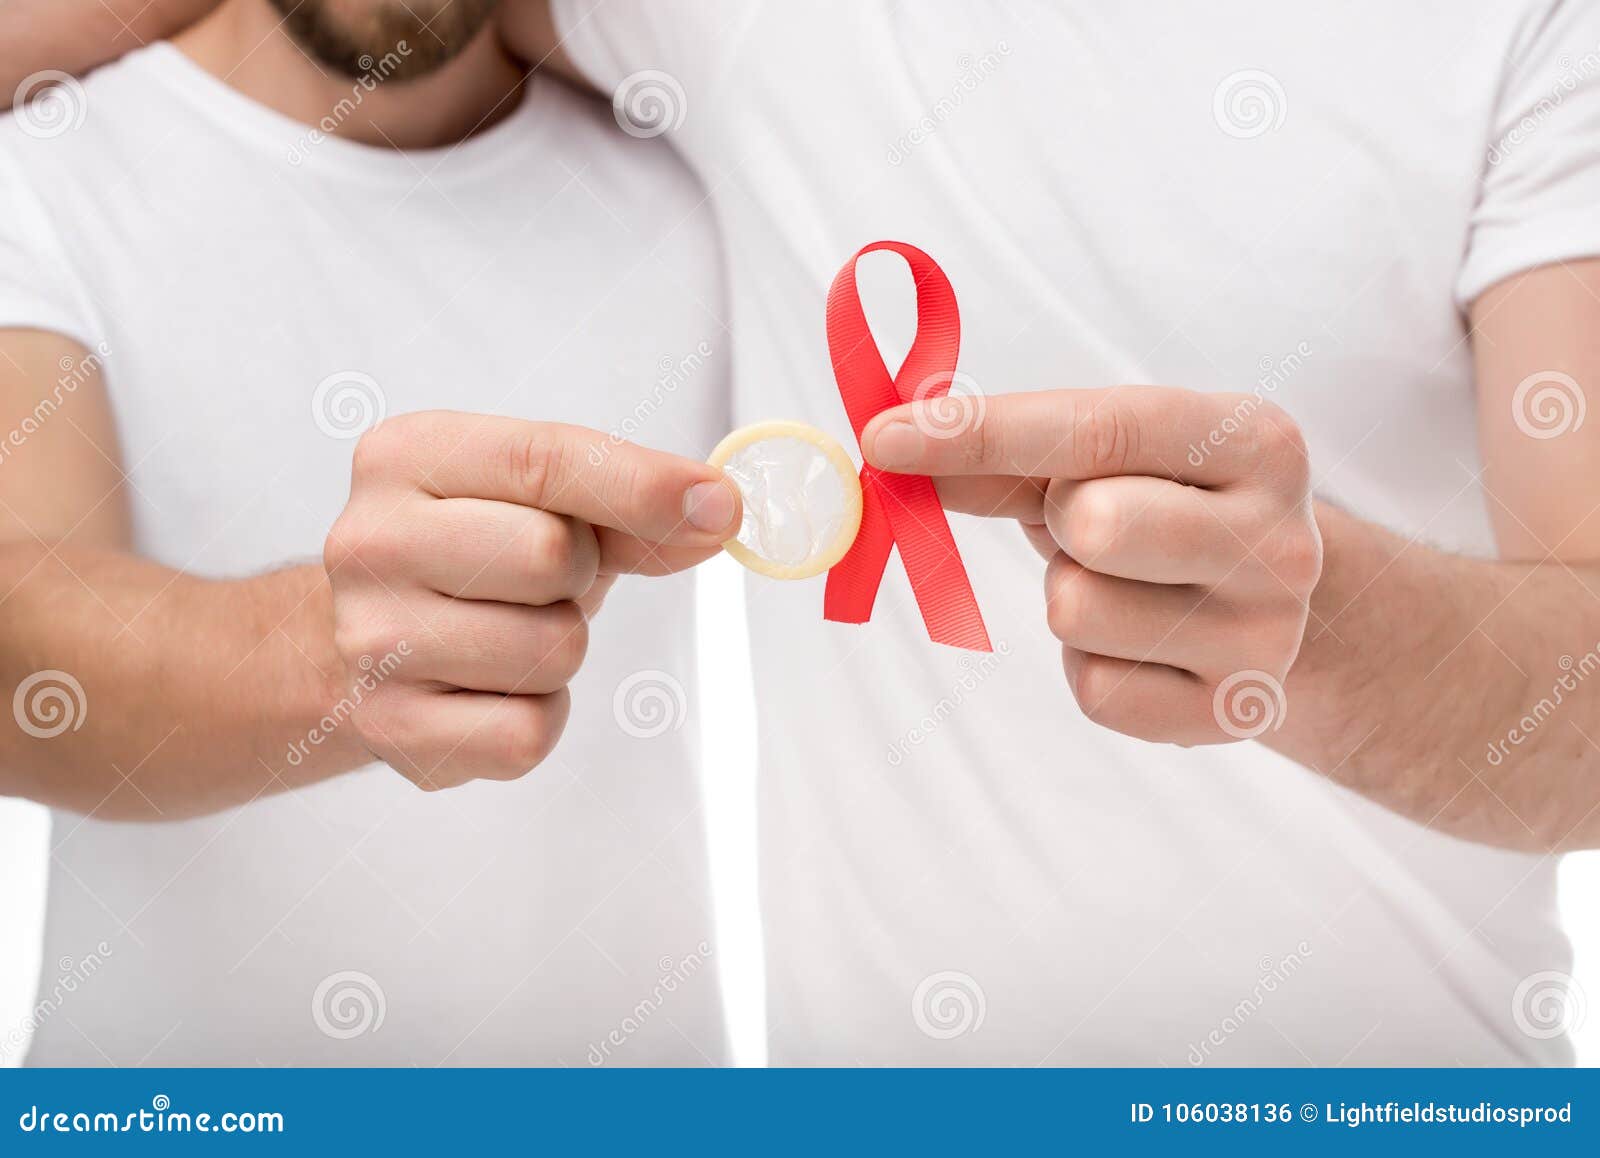 Влюбилась спид ап. ВИЧ предохранение. Презик СПИД. Защищенные половые контакты.